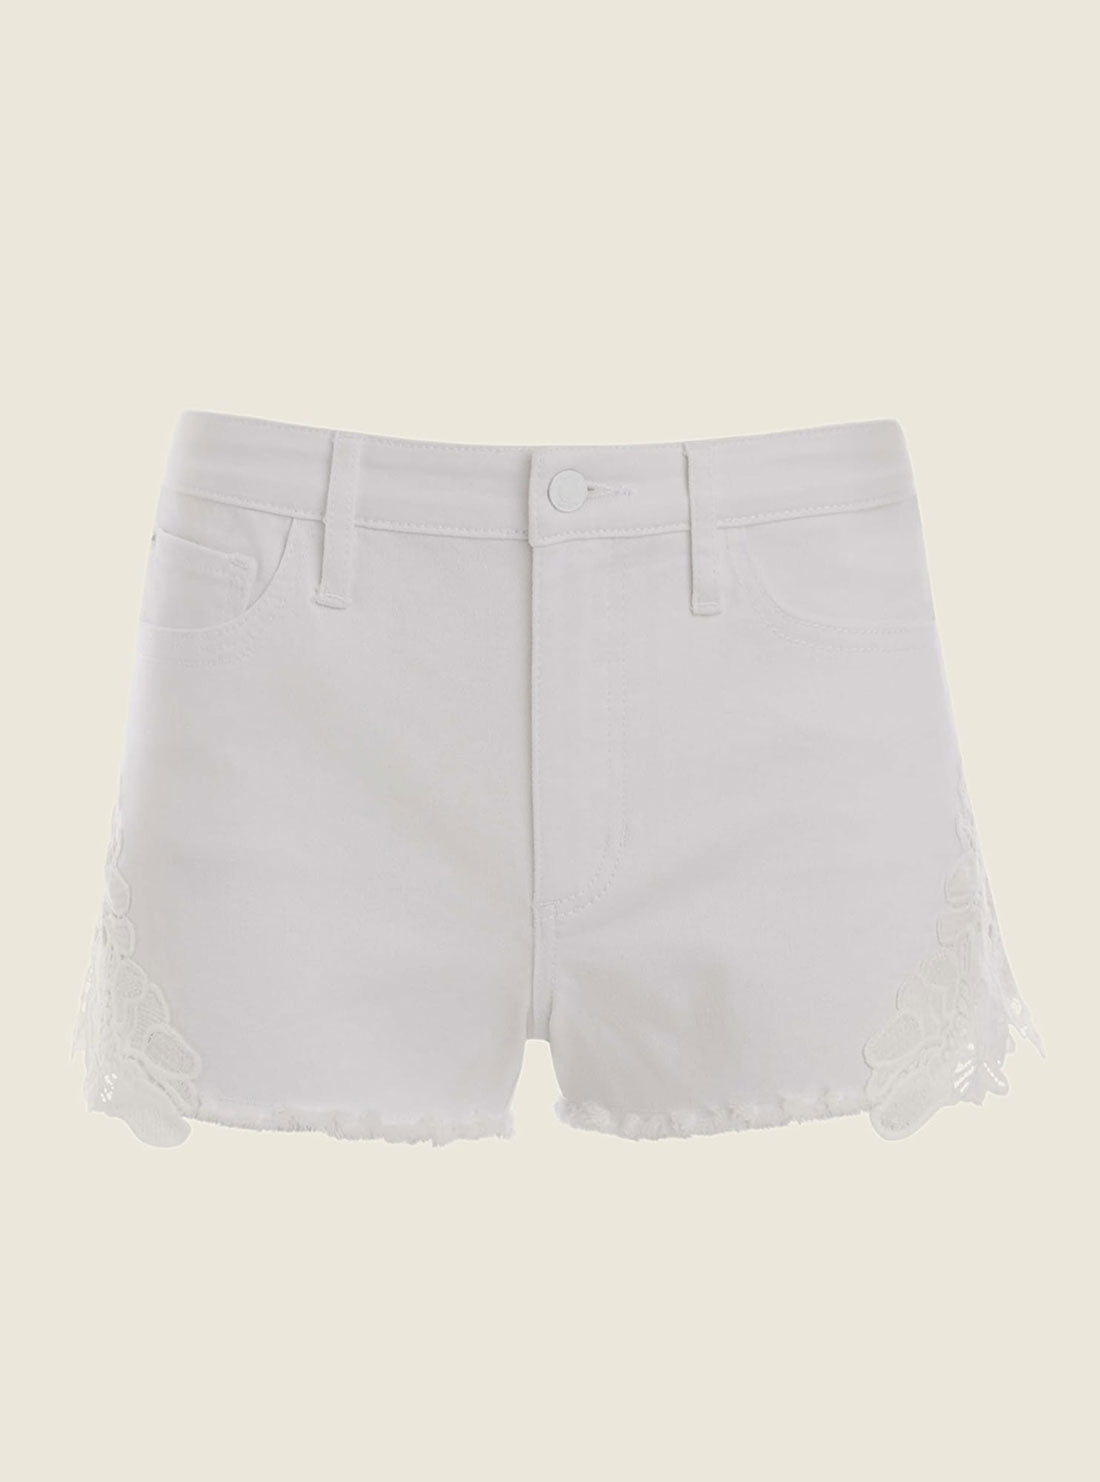 White 1981 Embroidered Denim Shorts